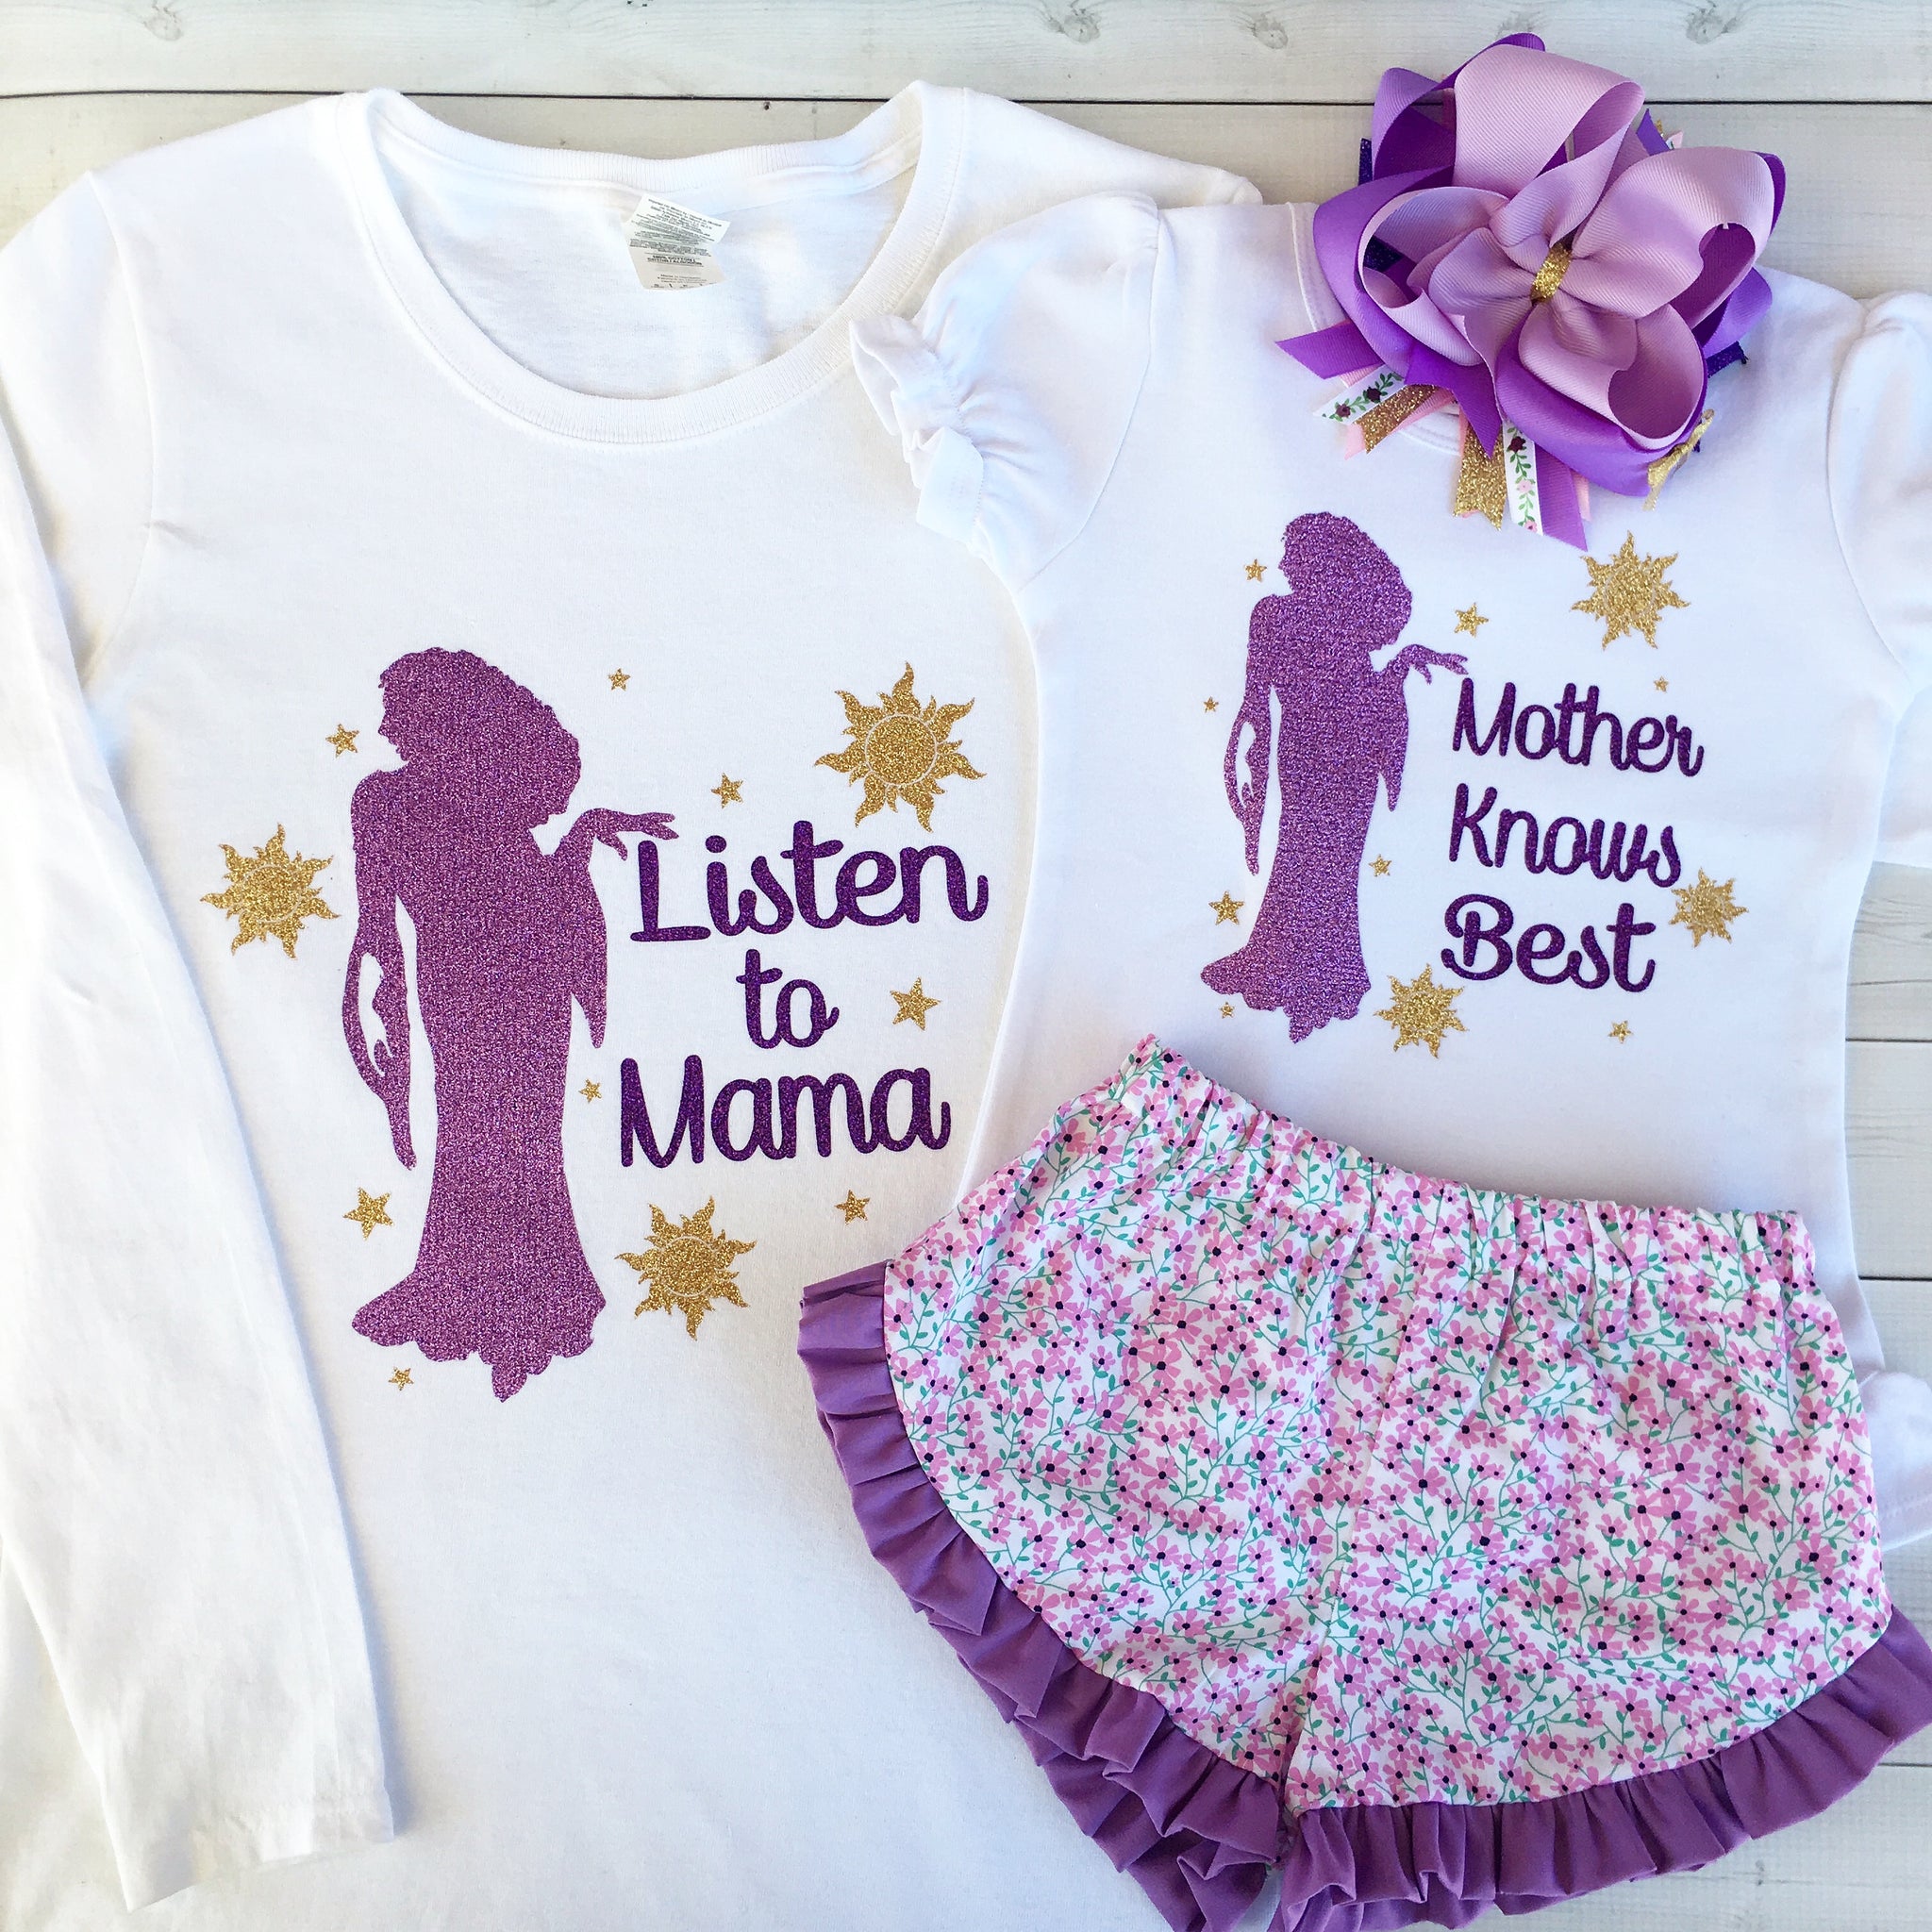 Listen to Mama Ladies Shirt